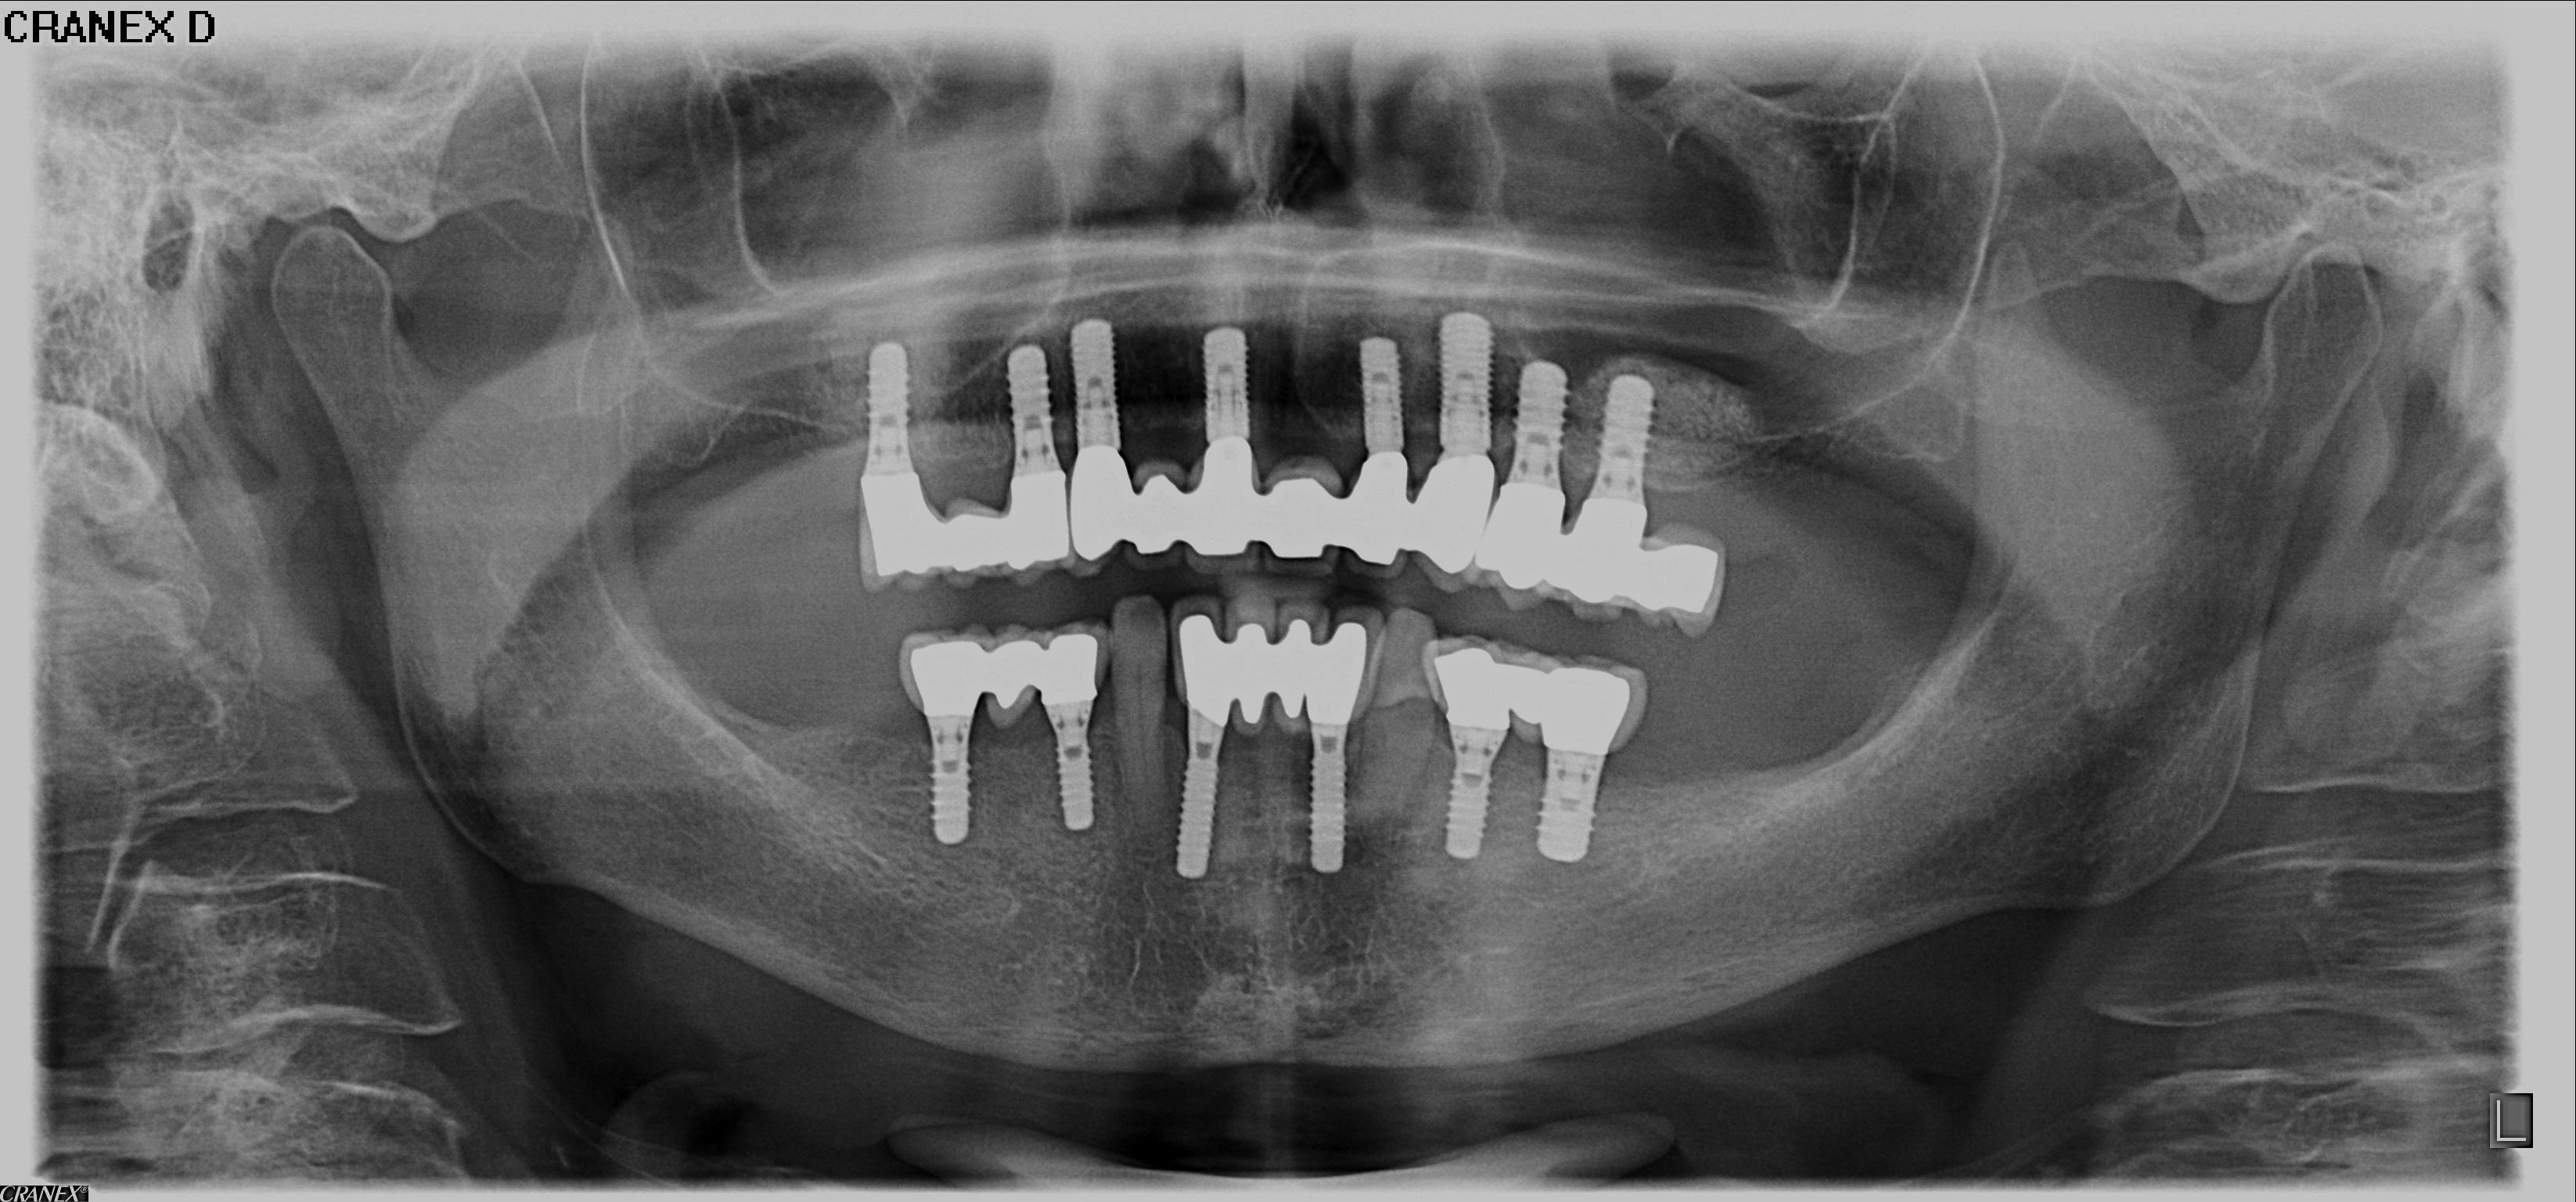 Implantate als Zahnersatz